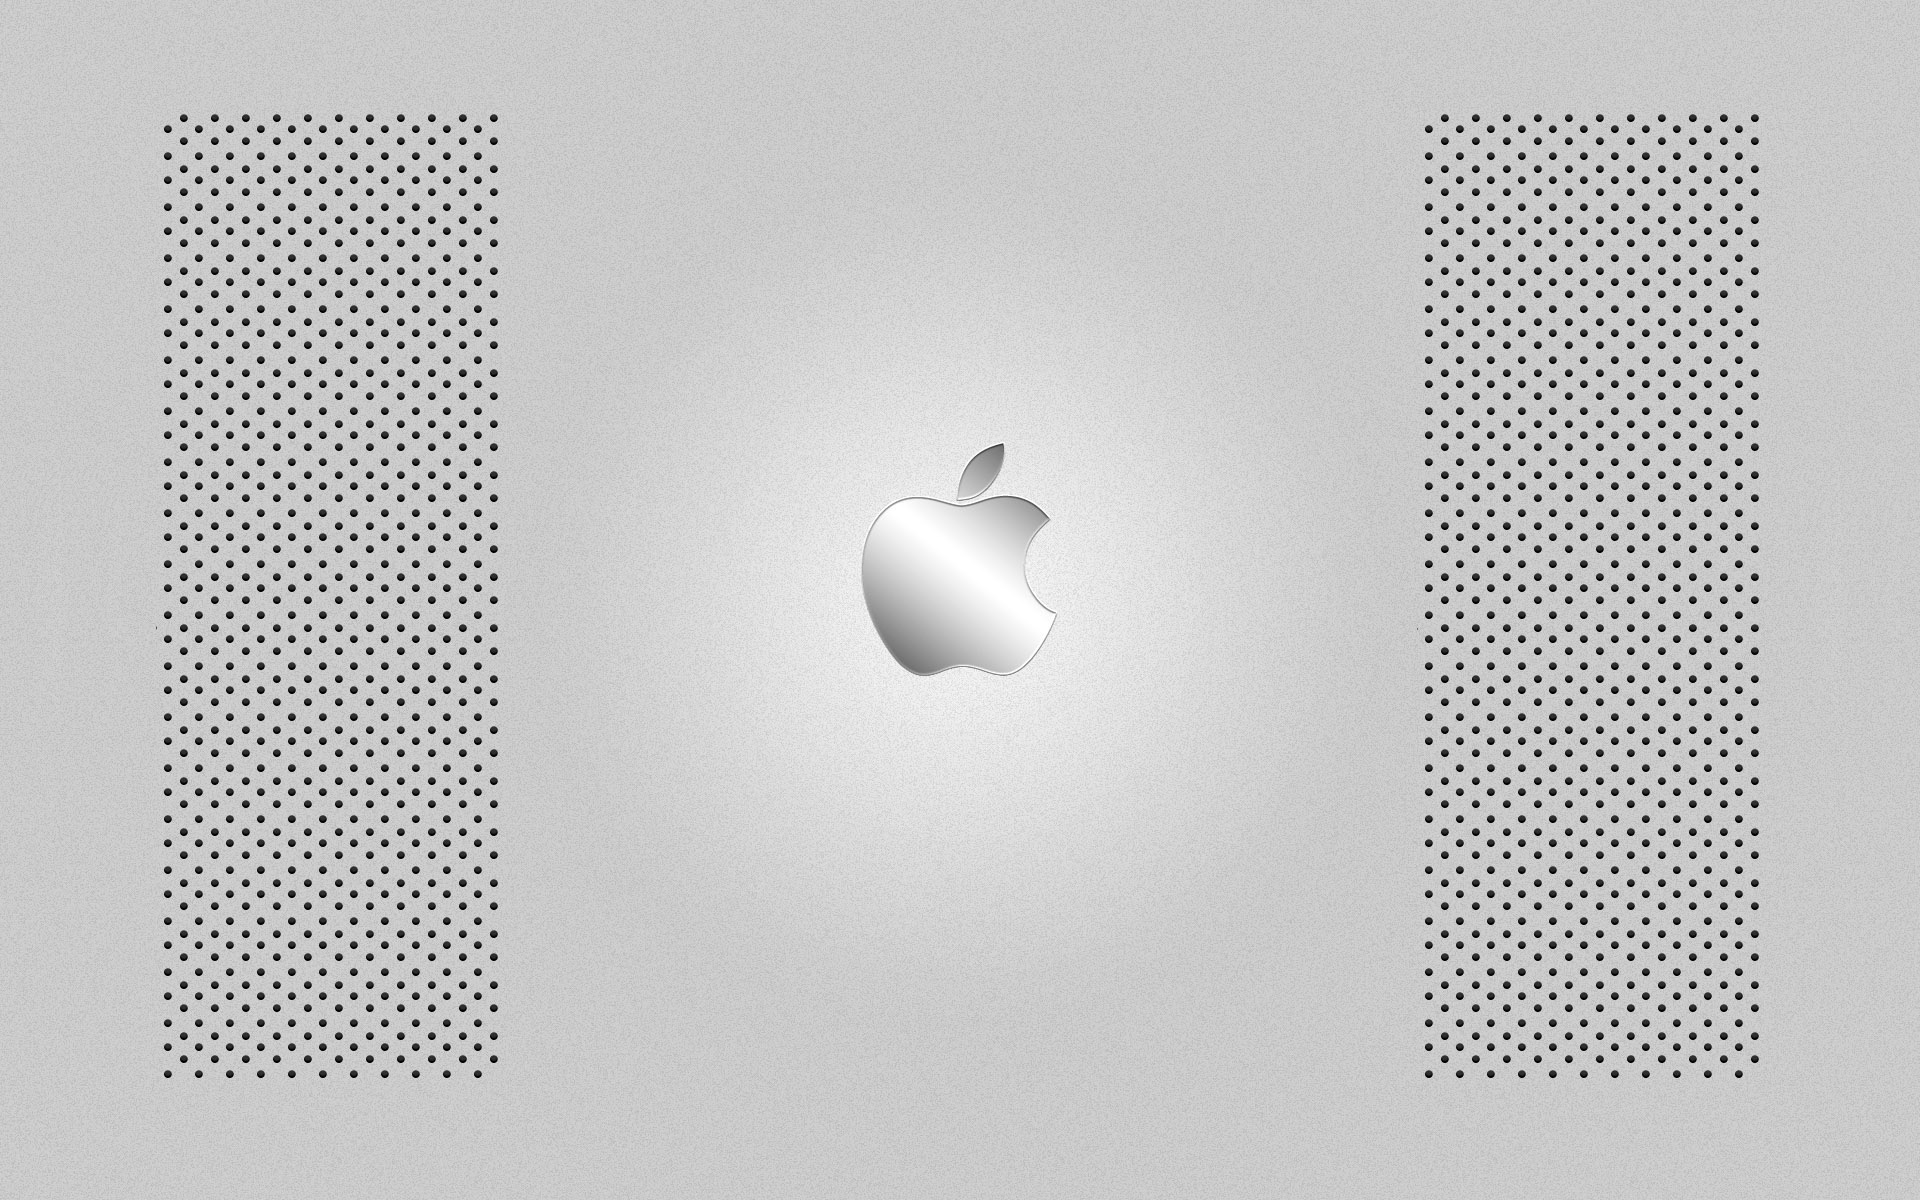 壁纸1920x1200Apple主题 35 14壁纸 Apple主题壁纸 Apple主题图片 Apple主题素材 系统壁纸 系统图库 系统图片素材桌面壁纸